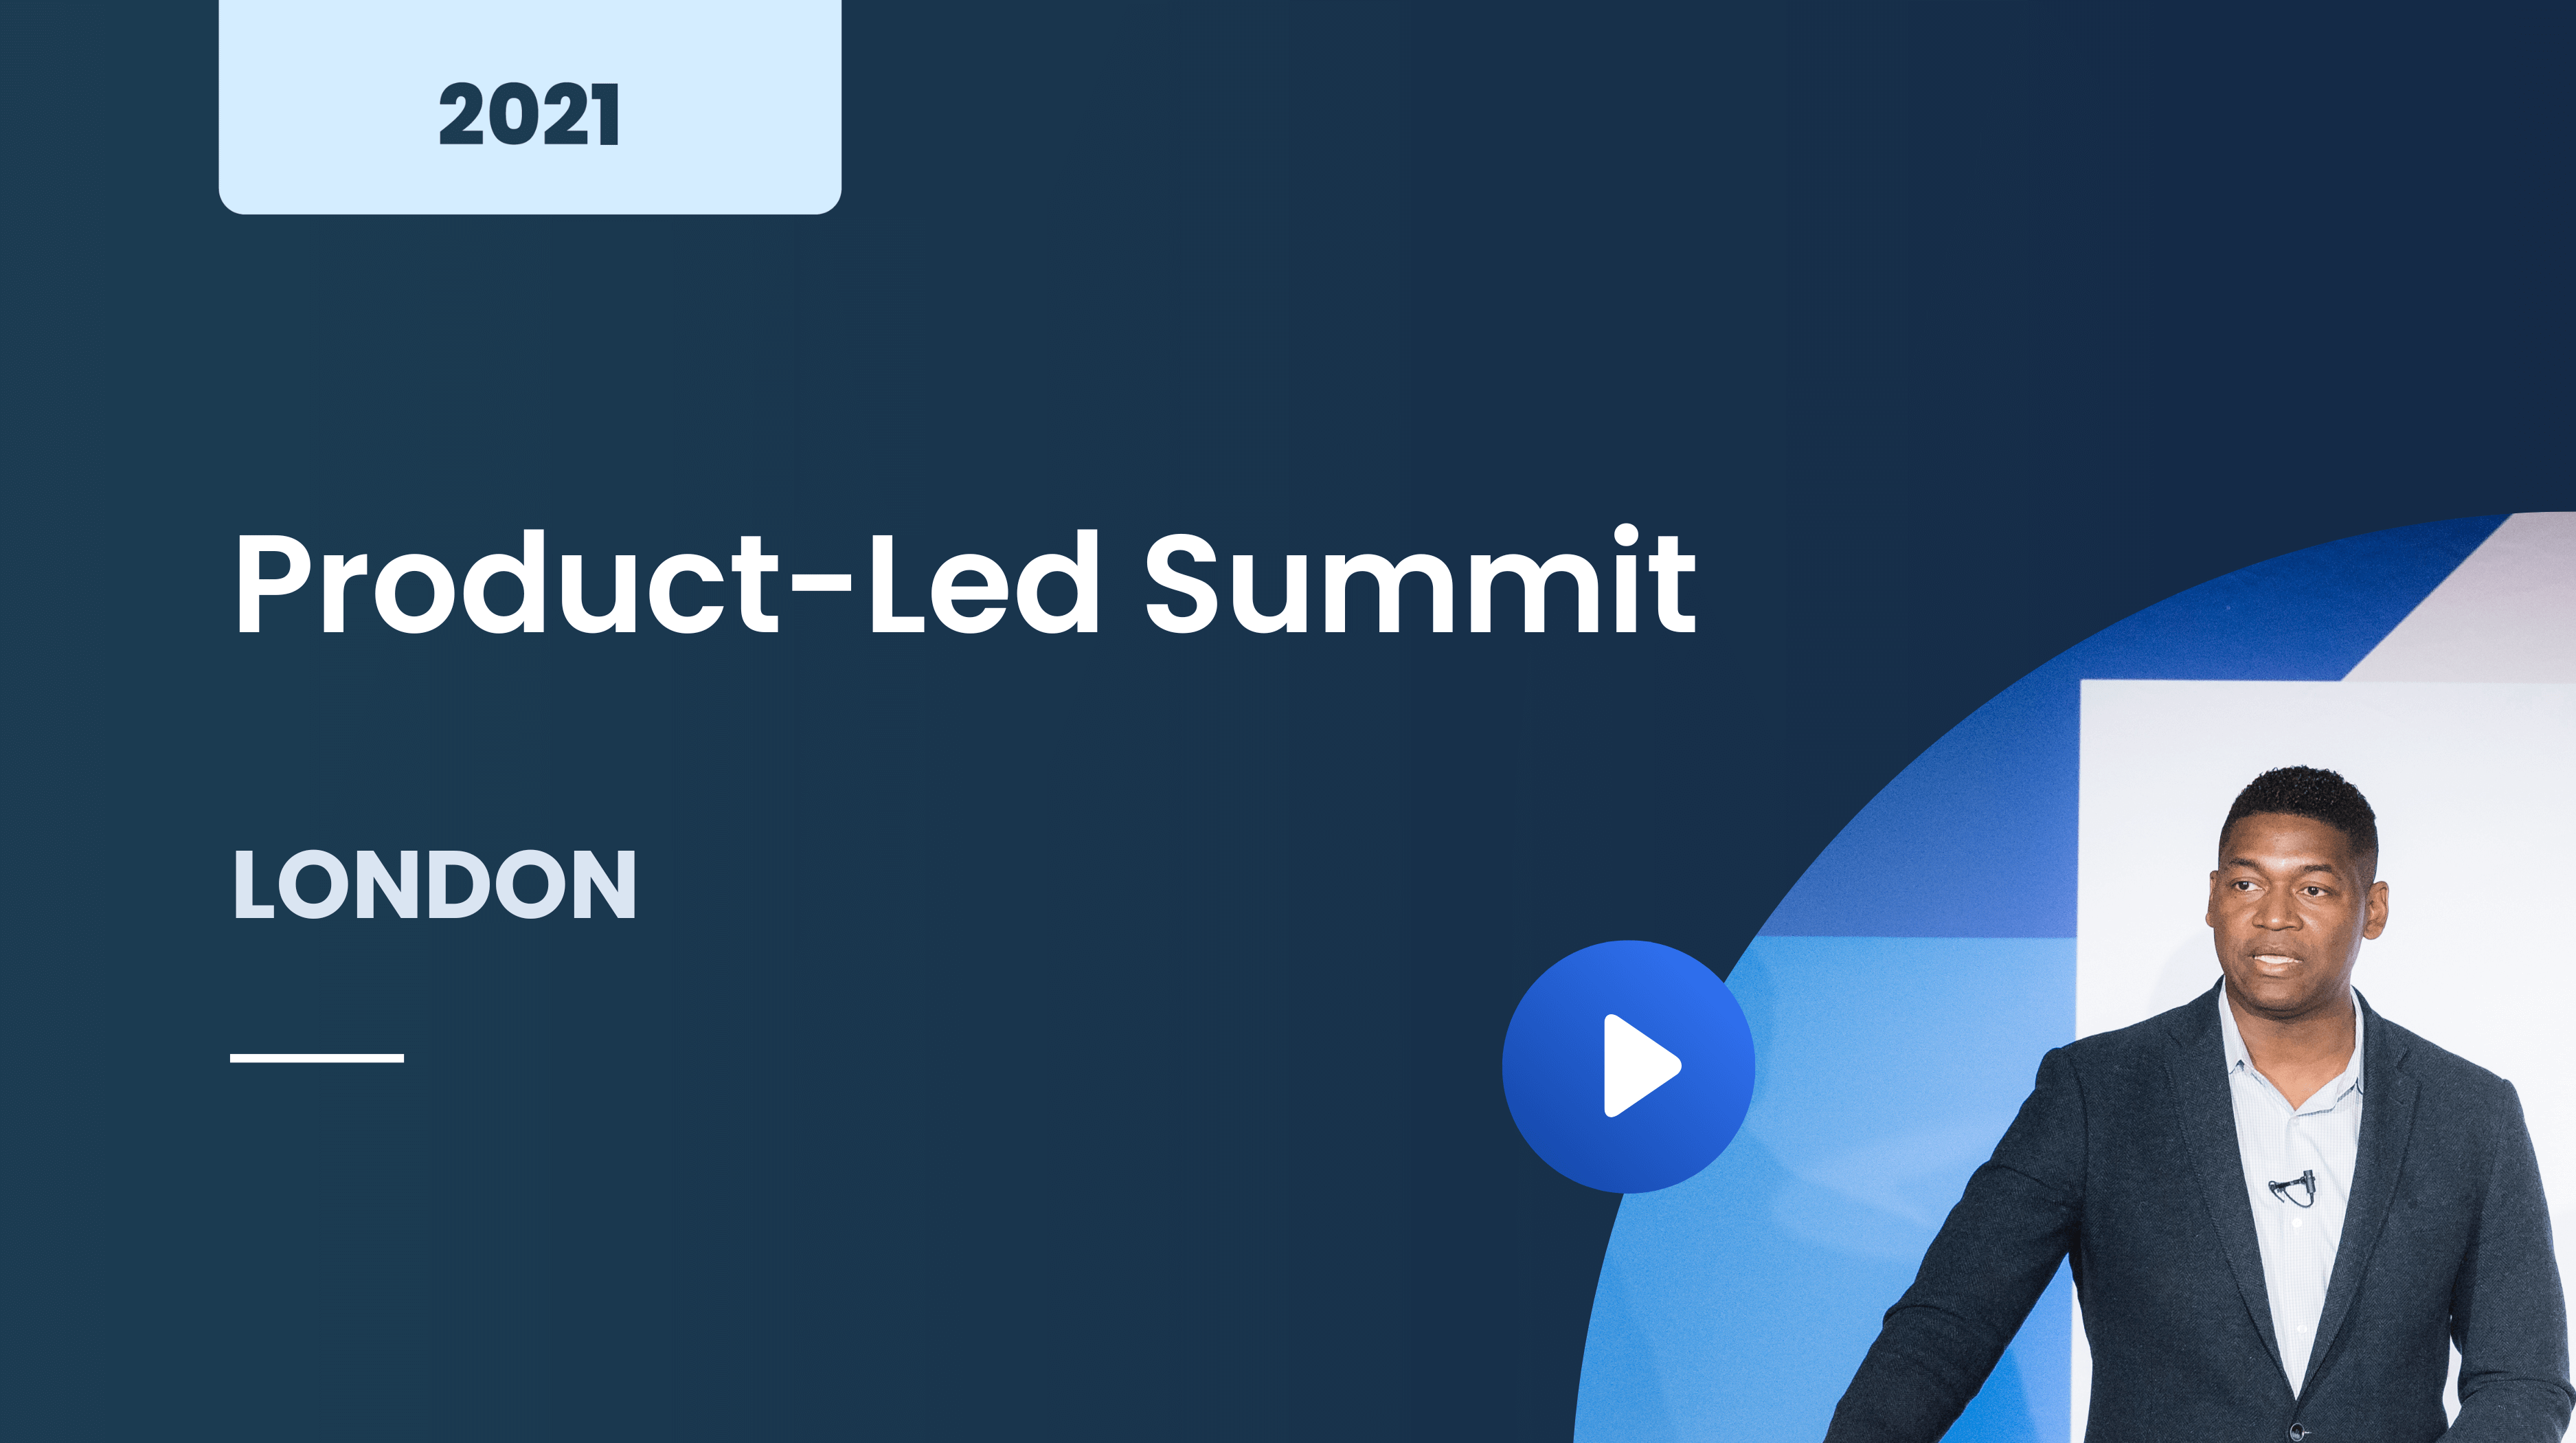 Product-Led Summit London November 2021